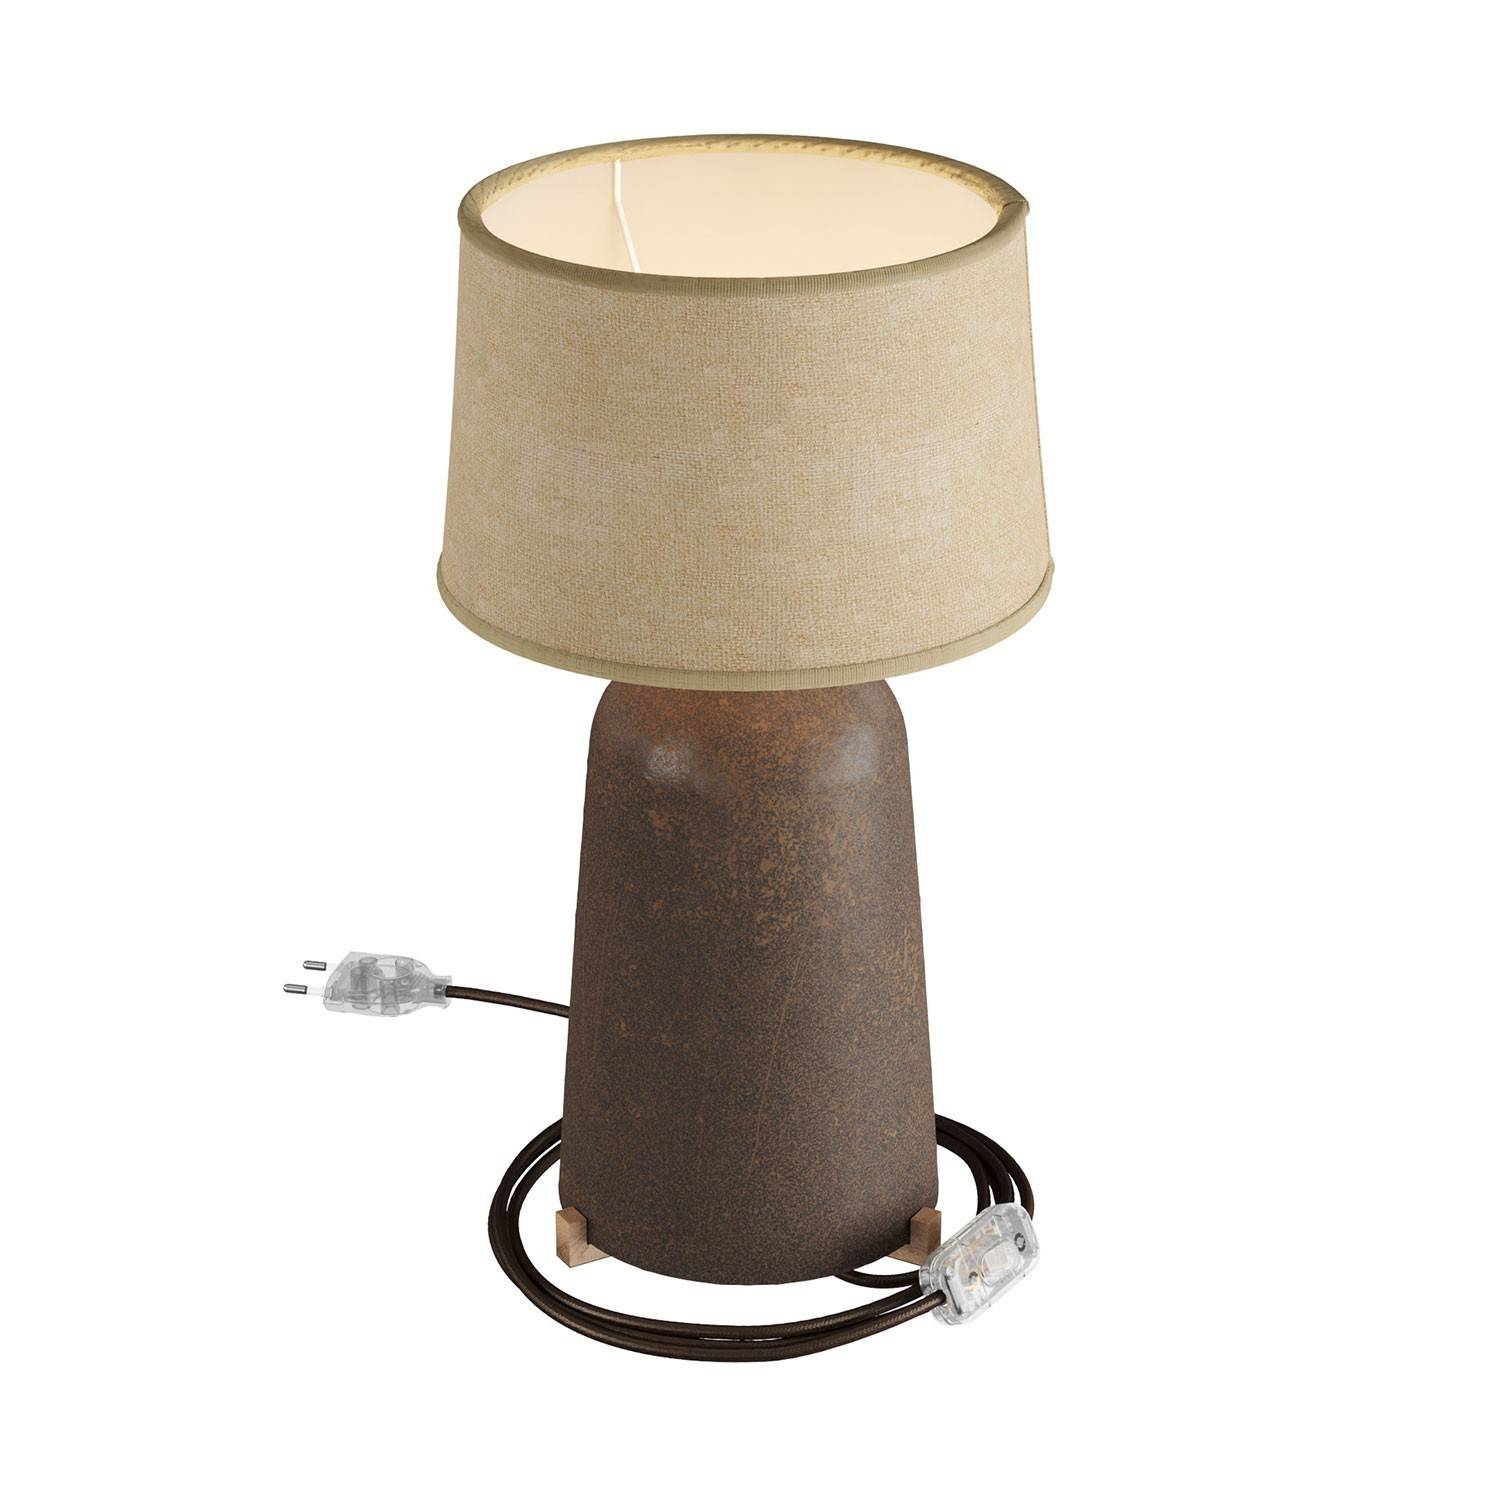 Ceramiczna lampa stołowa Bottiglia z kloszem Athena, w komplecie w oplocie, włącznikiem i 2-biegunową wtyczką